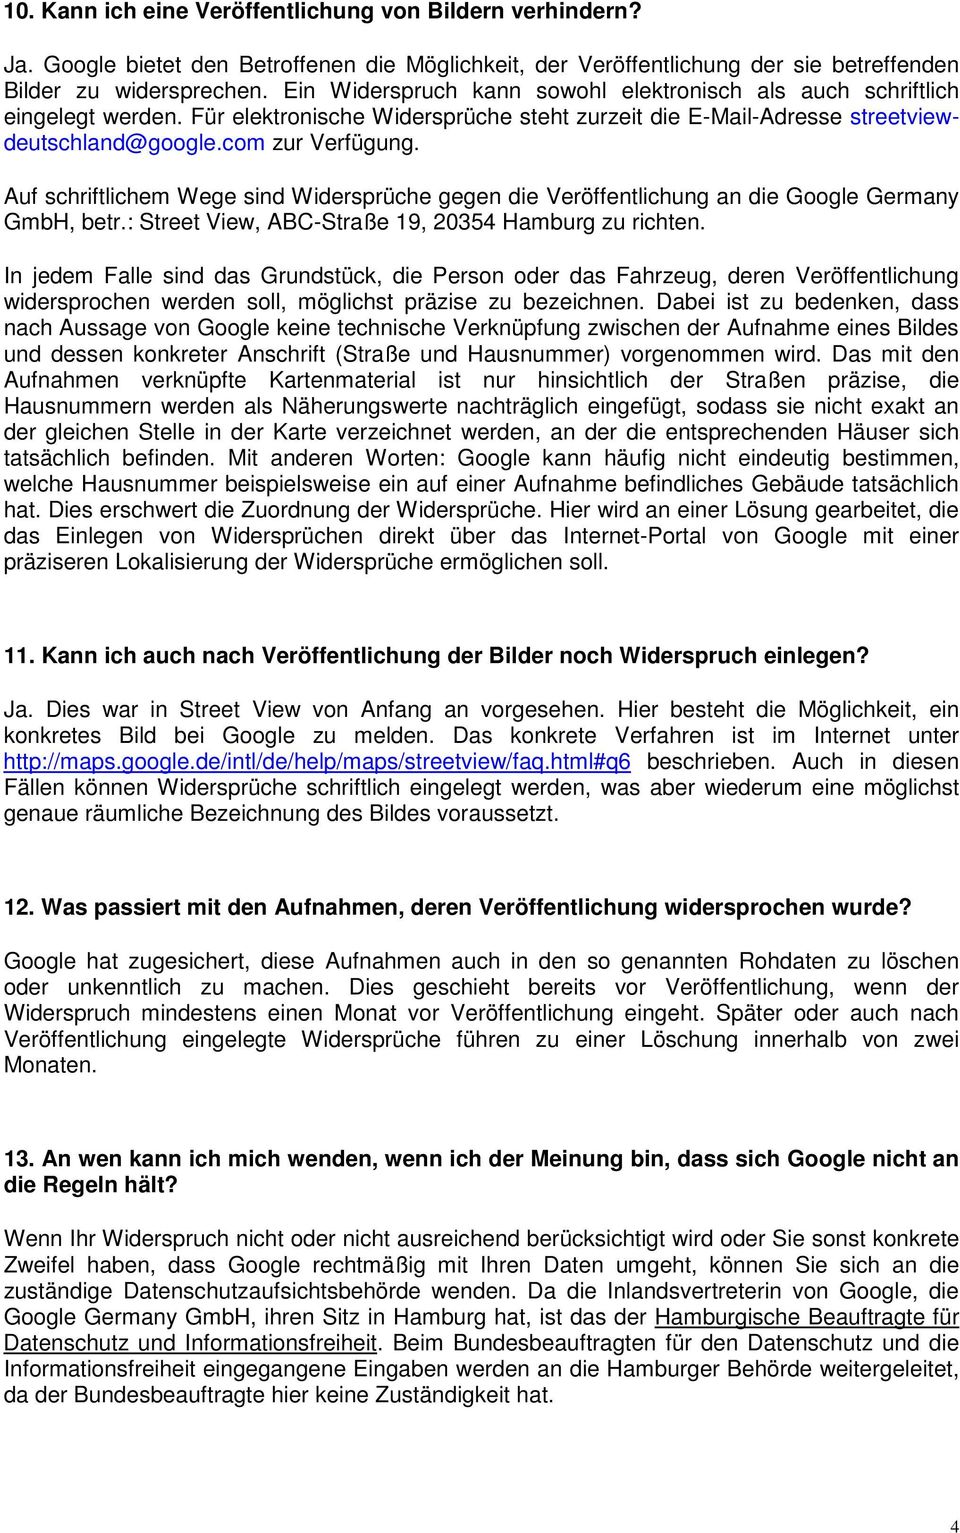 Auf schriftlichem Wege sind Widersprüche gegen die Veröffentlichung an die Google Germany GmbH, betr.: Street View, ABC-Straße 19, 20354 Hamburg zu richten.